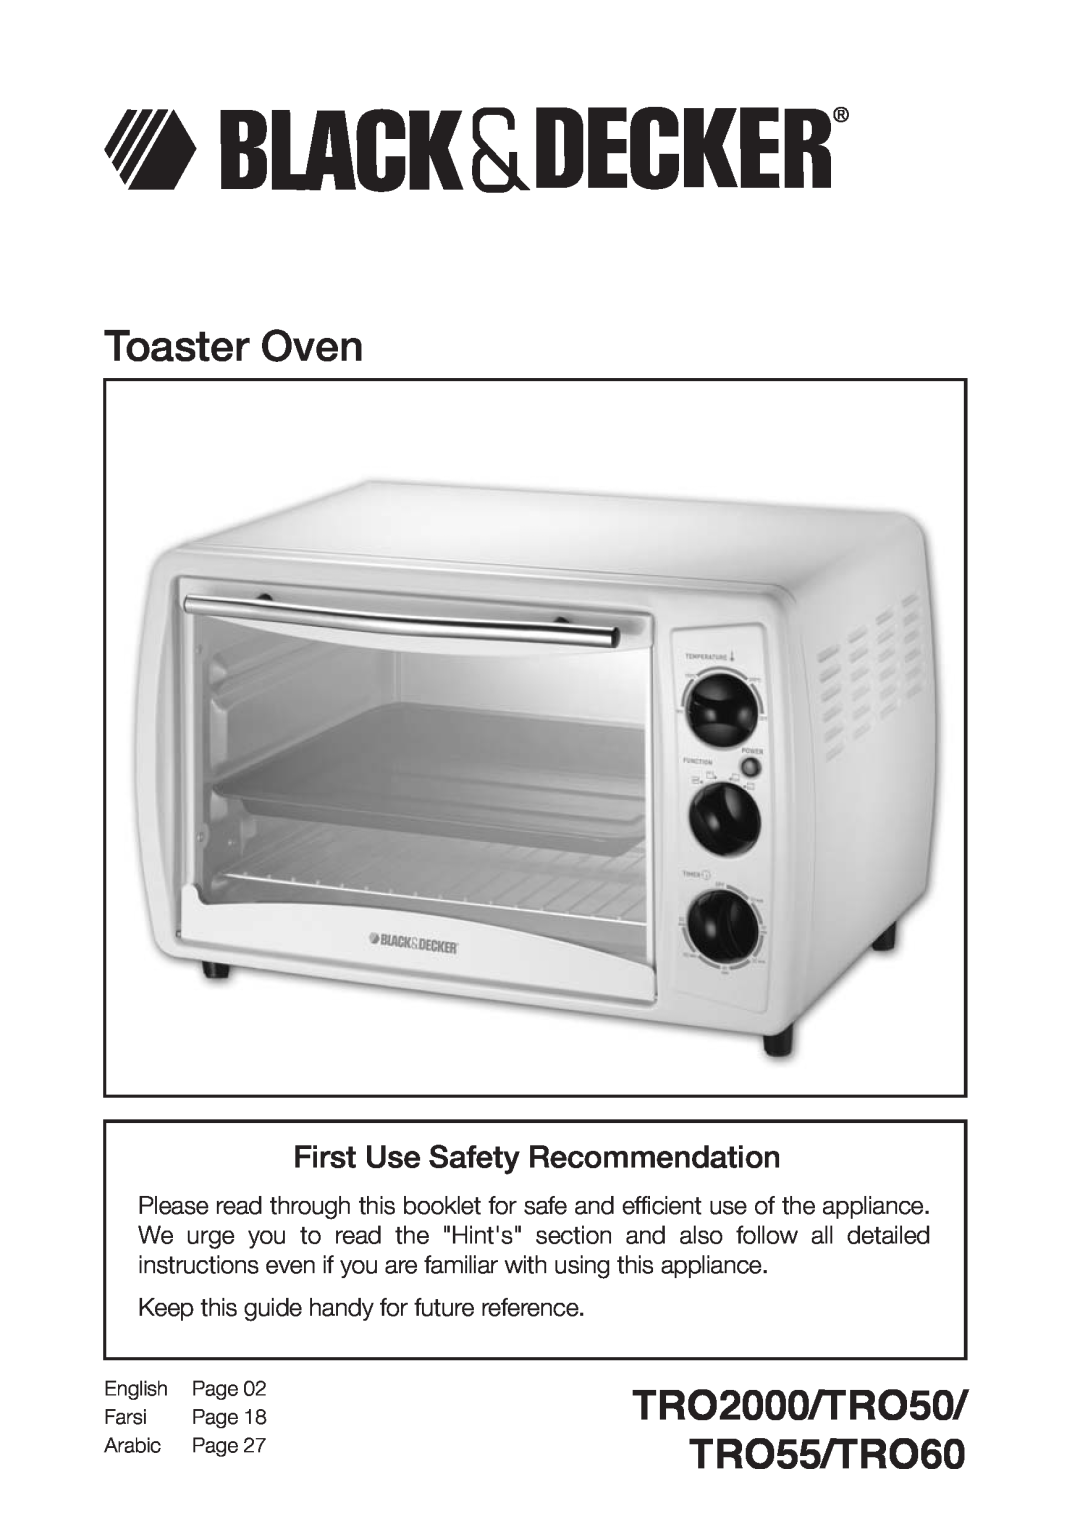 Black & Decker manual Toaster Oven, TRO2000/TRO50 TRO55/TRO60, First Use Safety Recommendation, English, Farsi, Arabic 